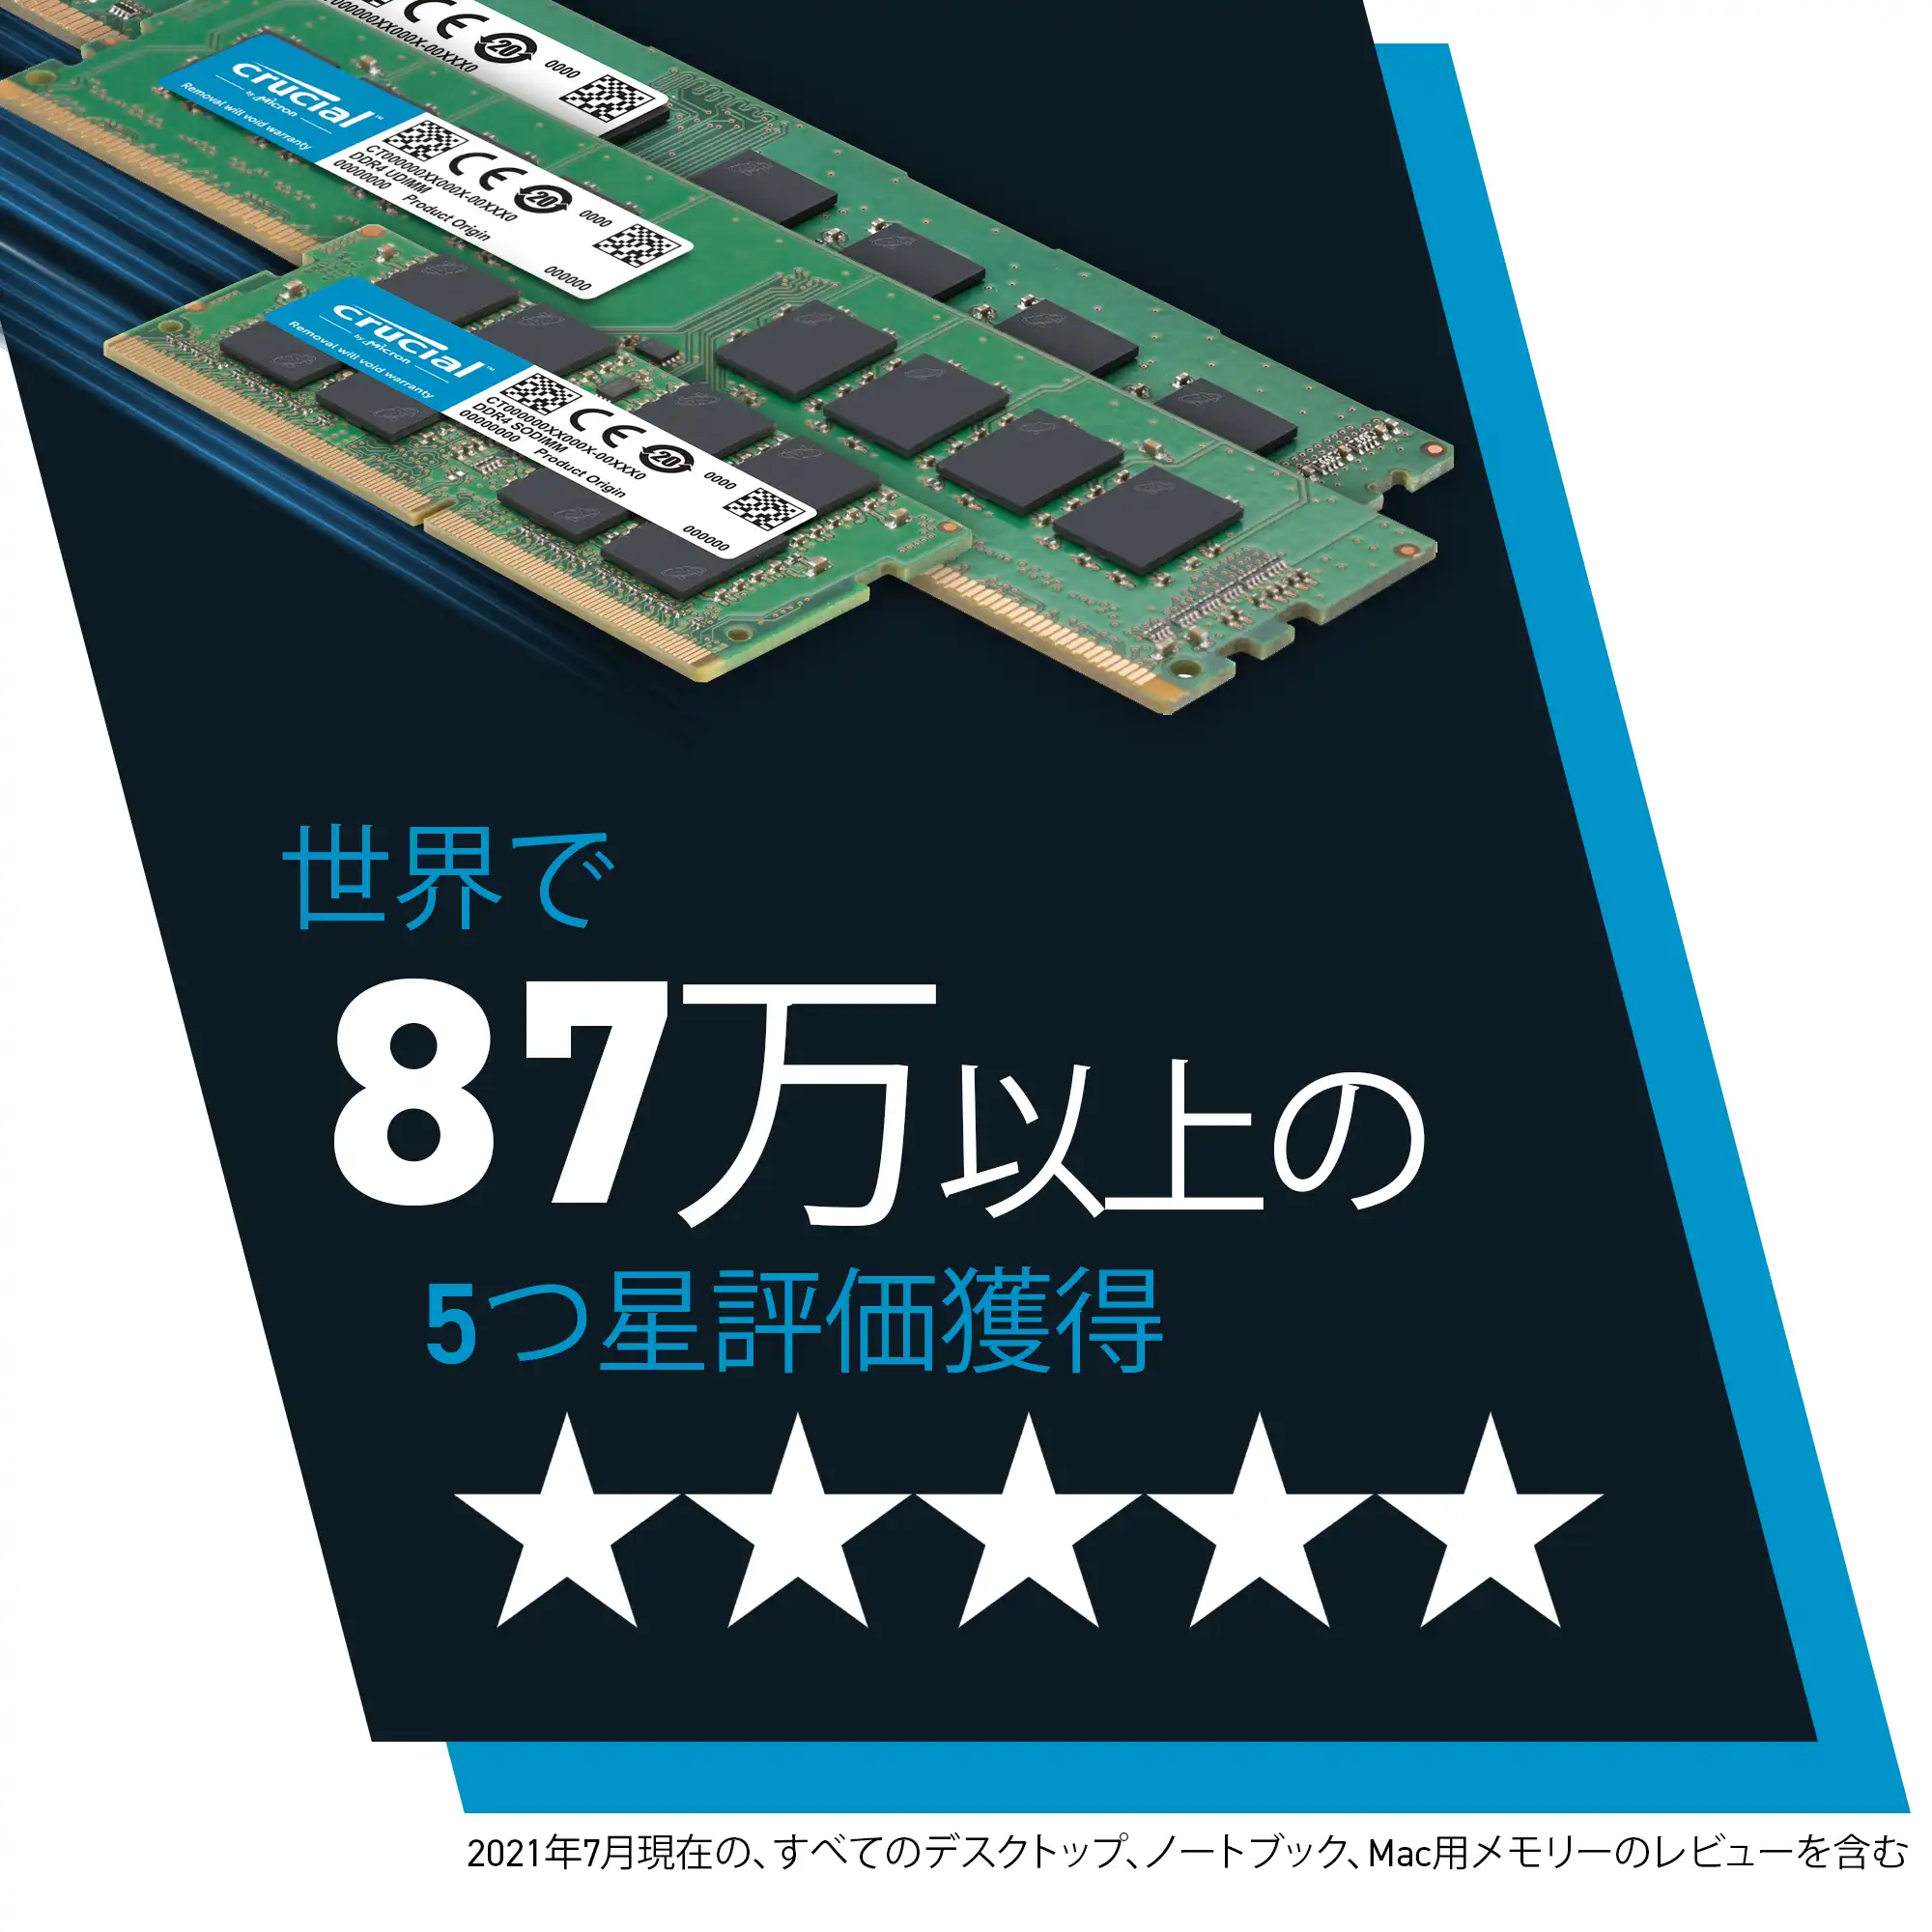 Crucial CT2K16G4DFRA32A (DDR4 PC4-25600 16GB 2枚組)の特長